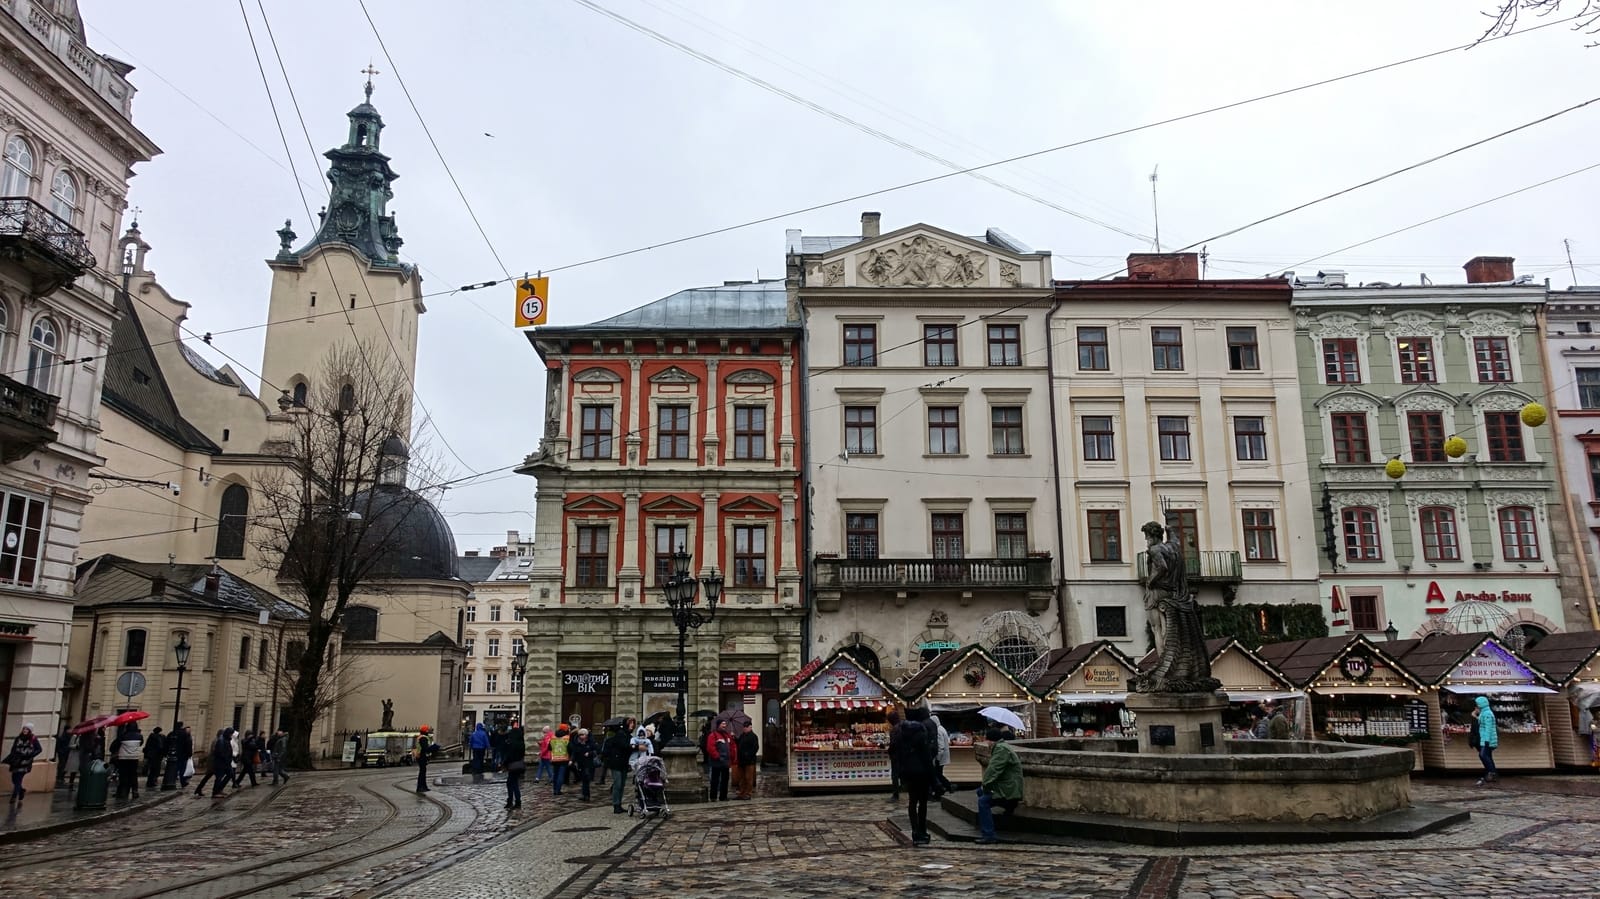 Der Marktplatz von Lviv liegt mitten in der Altstadt. Im Hintergrund ist die Lateinische Kathedrale Mariae Himmelfahrt zu erkennen.